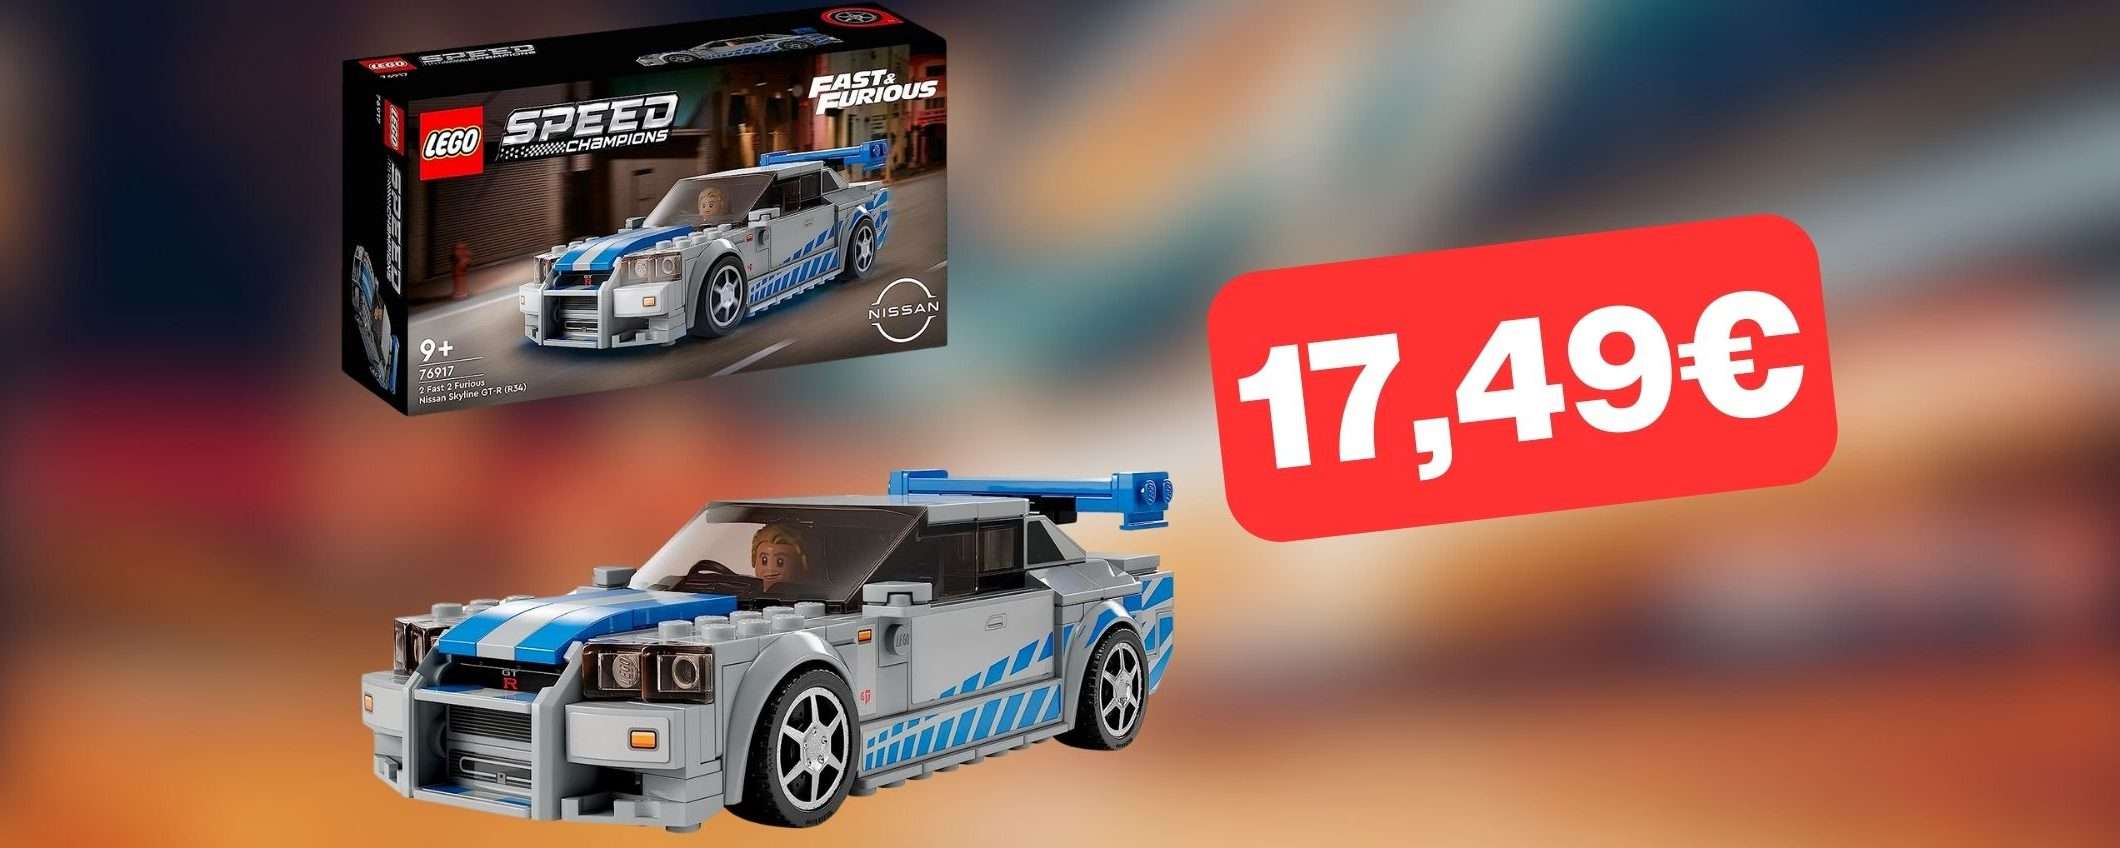 Set LEGO 2 Fast 2 Furious a 17,49€: fantastico PREZZO DI NATALE